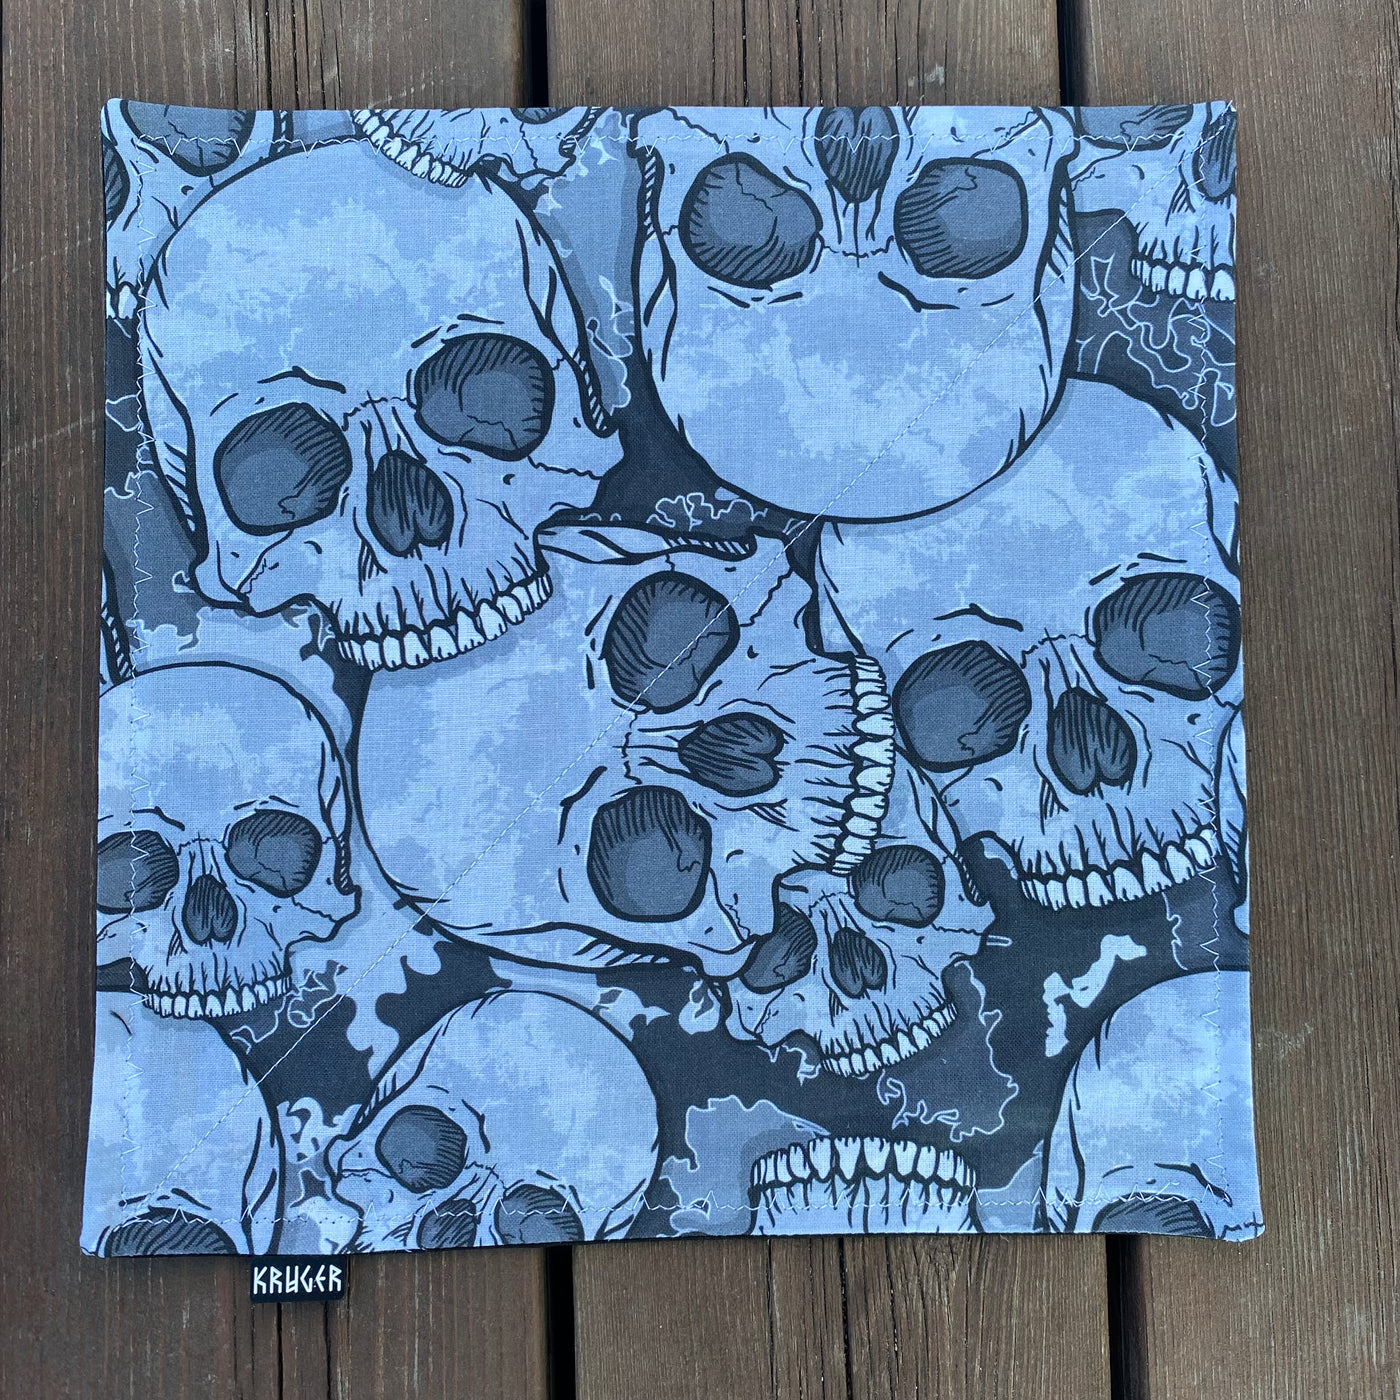 Skull army art hank - limited